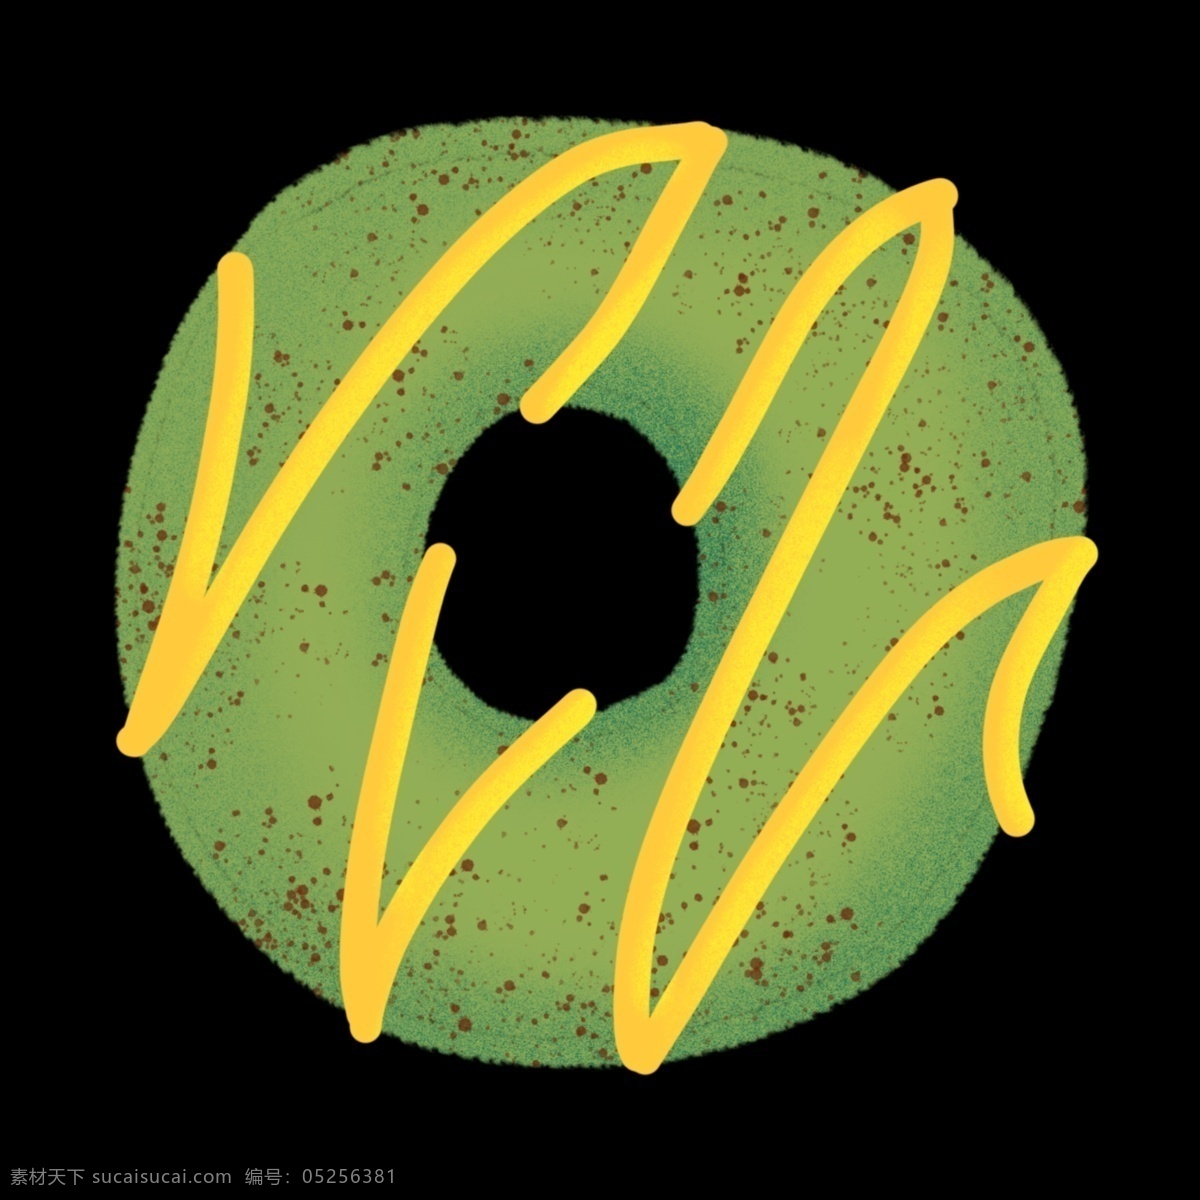 绿色 圆形 甜甜 圈 美食 甜品 甜甜圈